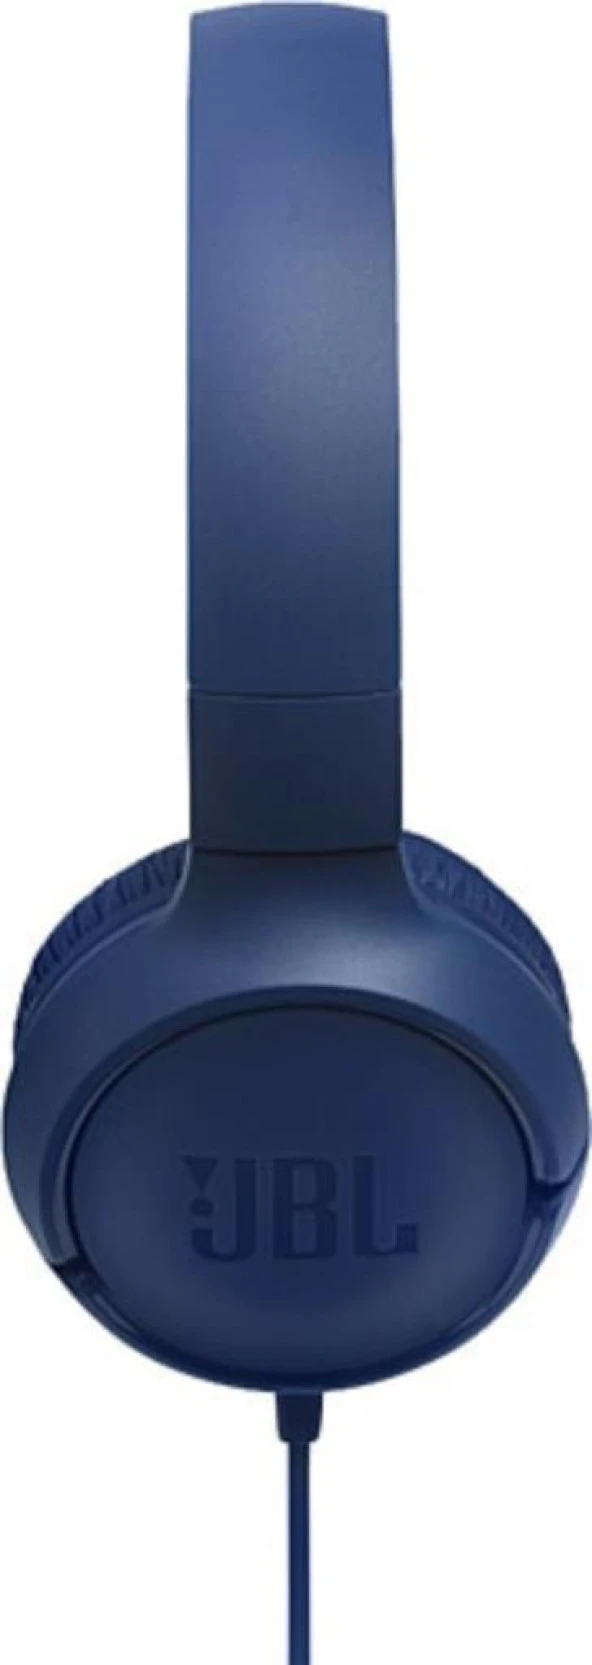 JBL T500 Mikrofonlu Kablolu Kulaküstü Mavi Kulaklık KUTUSU AÇIK SIFIR